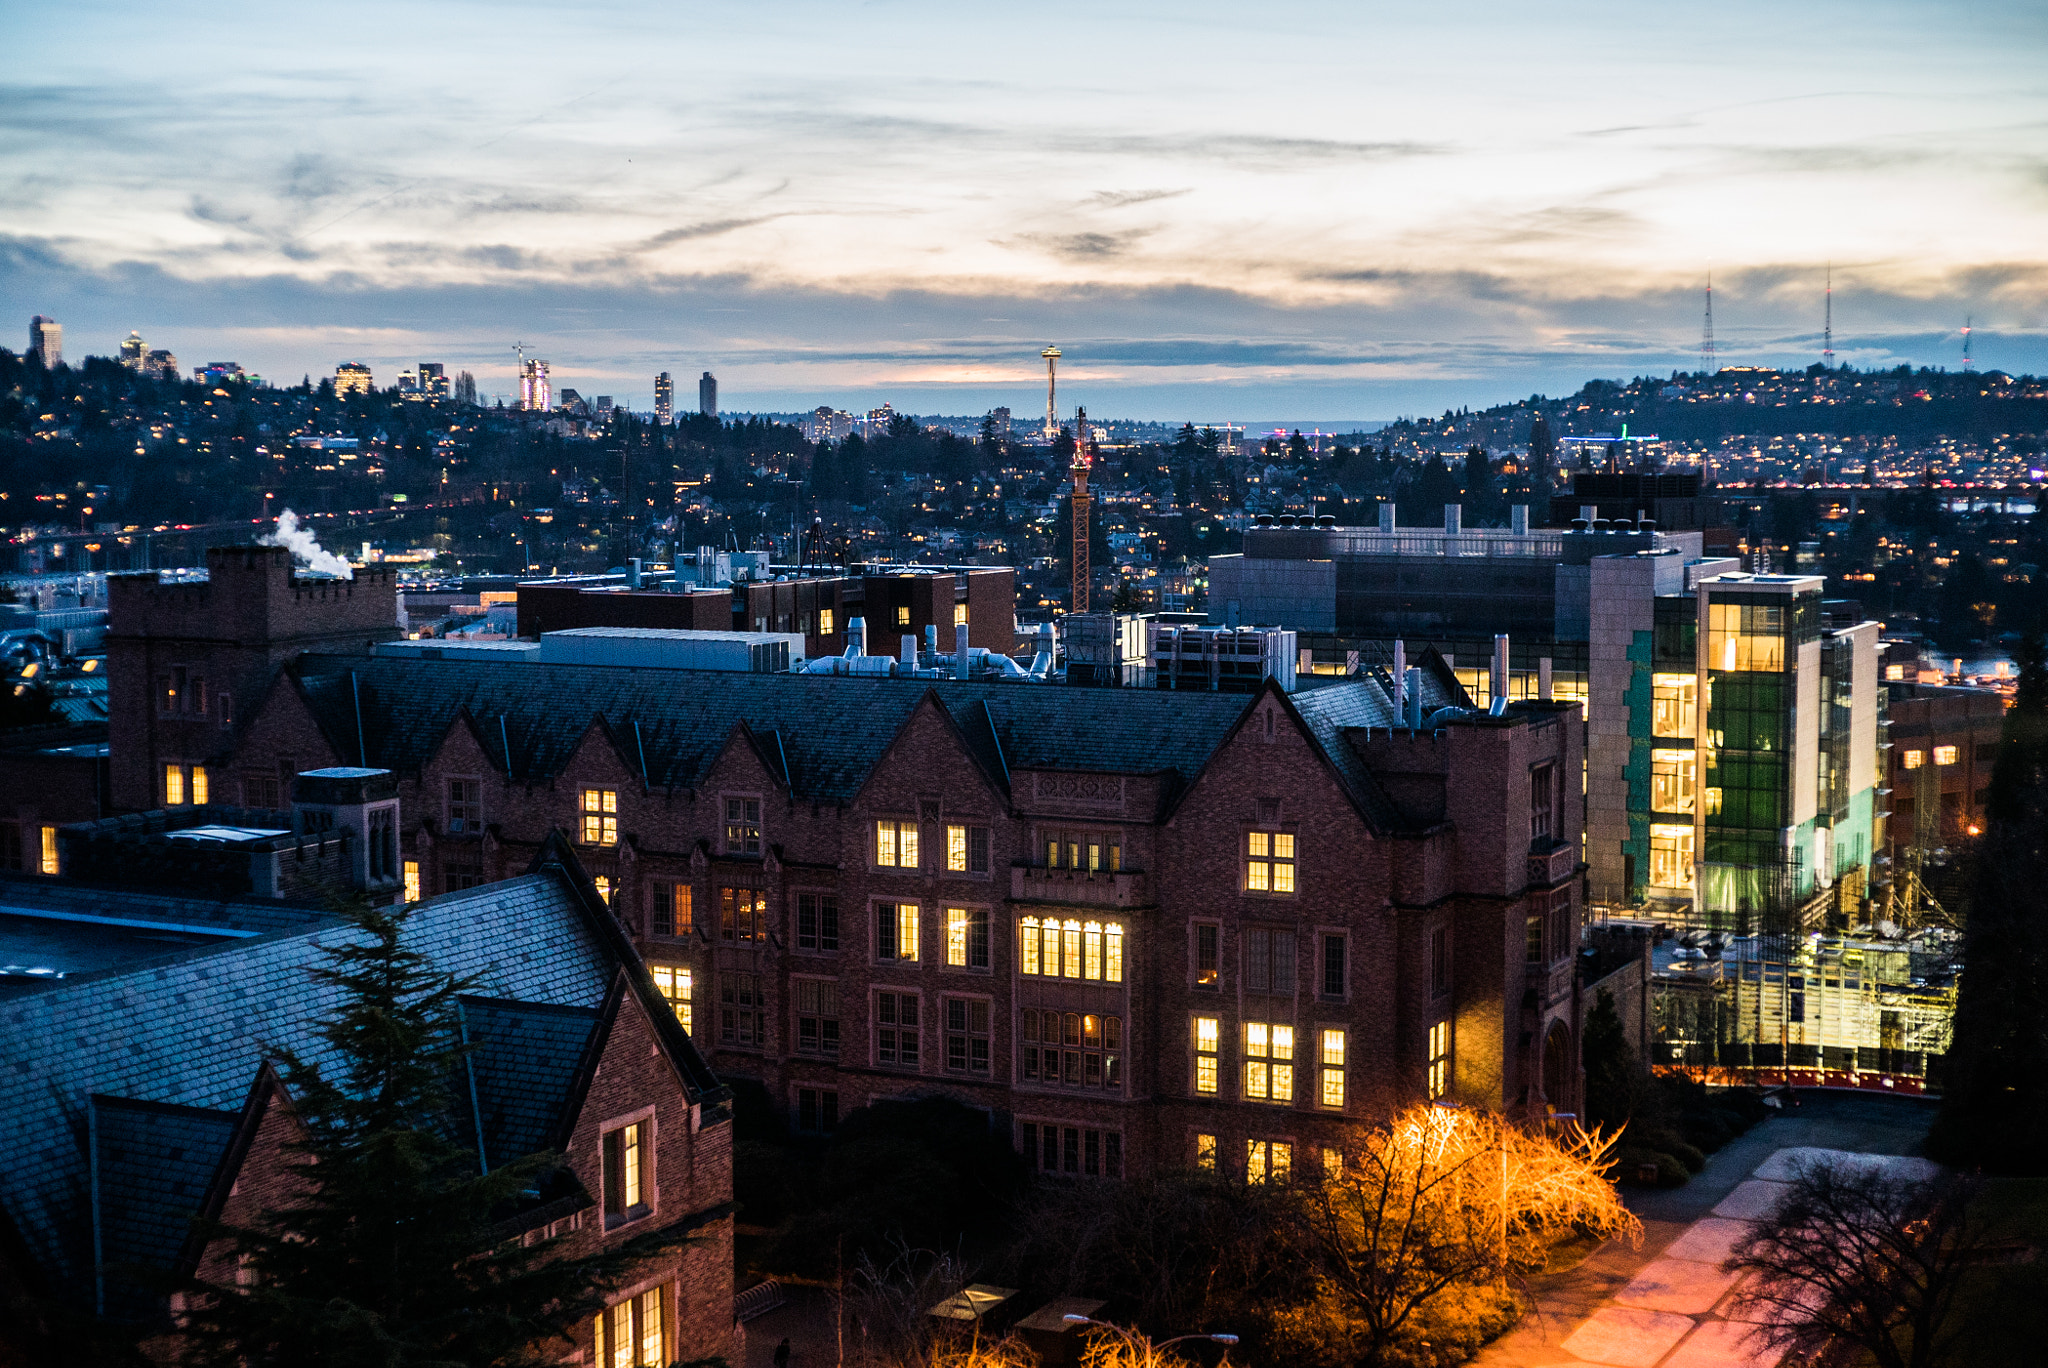 Sunset @ University of Washington